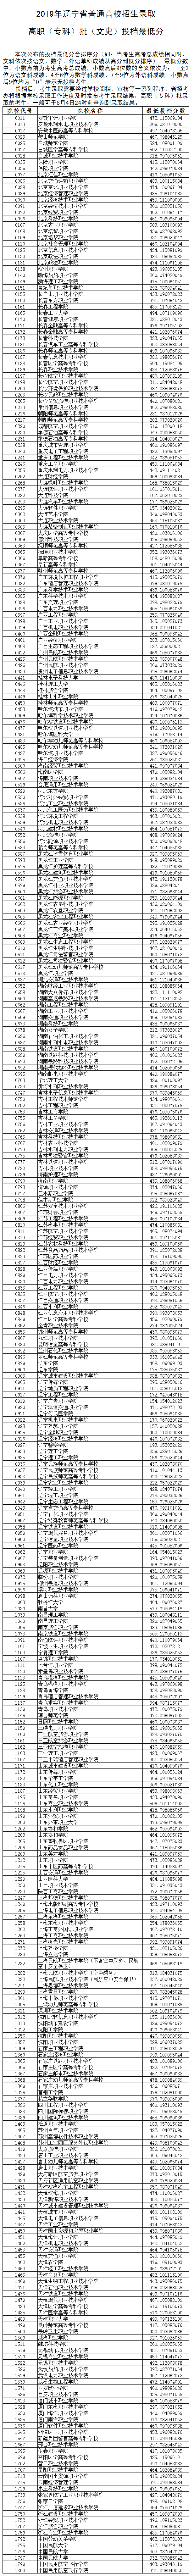 2019年辽宁高考专科院校投档线投档情况分析【文理科】